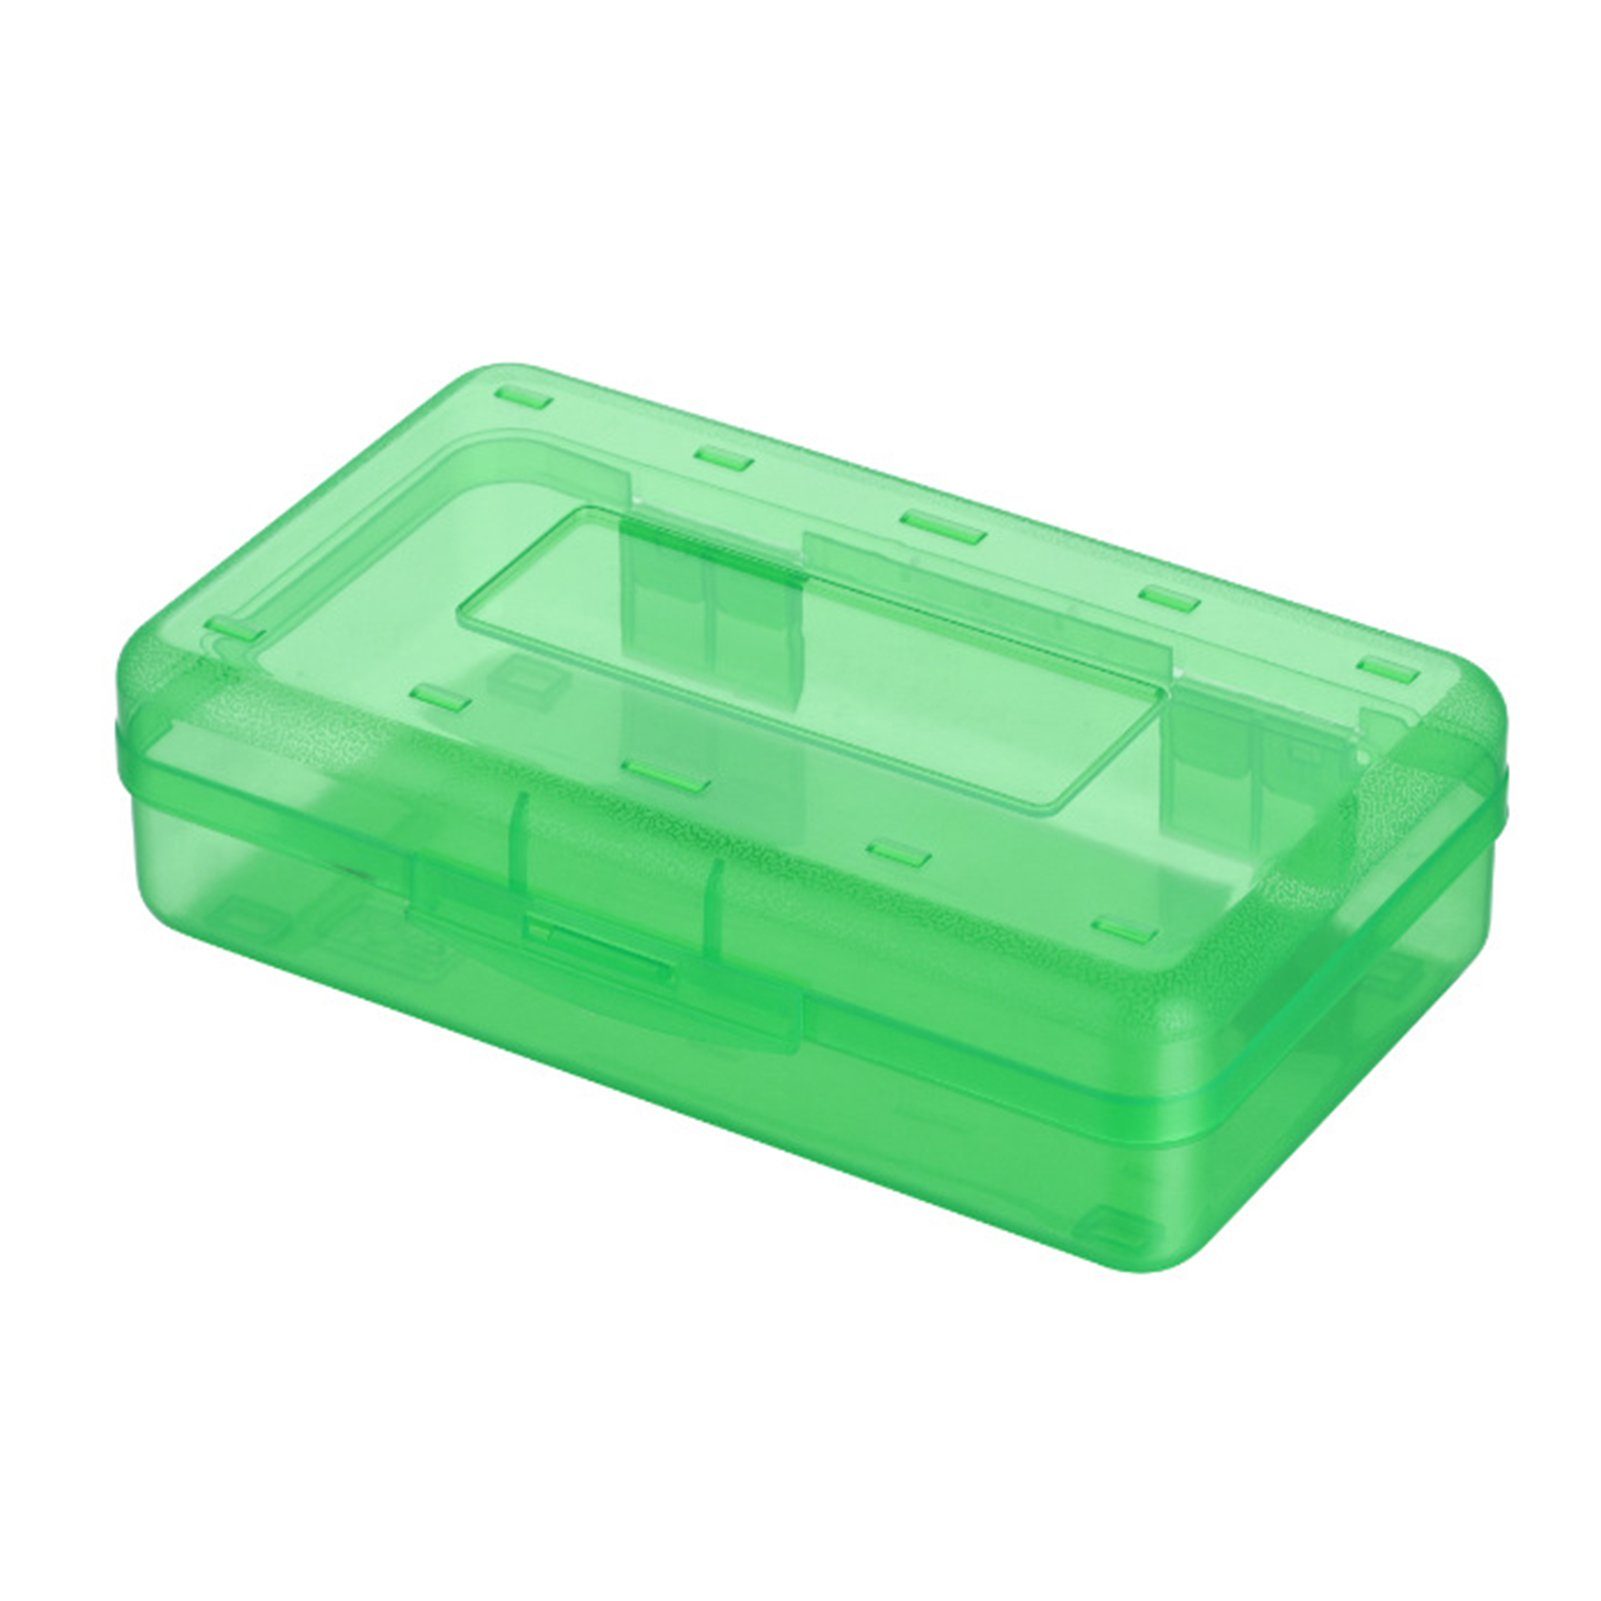 Blusmart Federtasche Schöne Transparente/bunte Bleistiftbox, Tragbare Federtasche, Bleistifttasche green